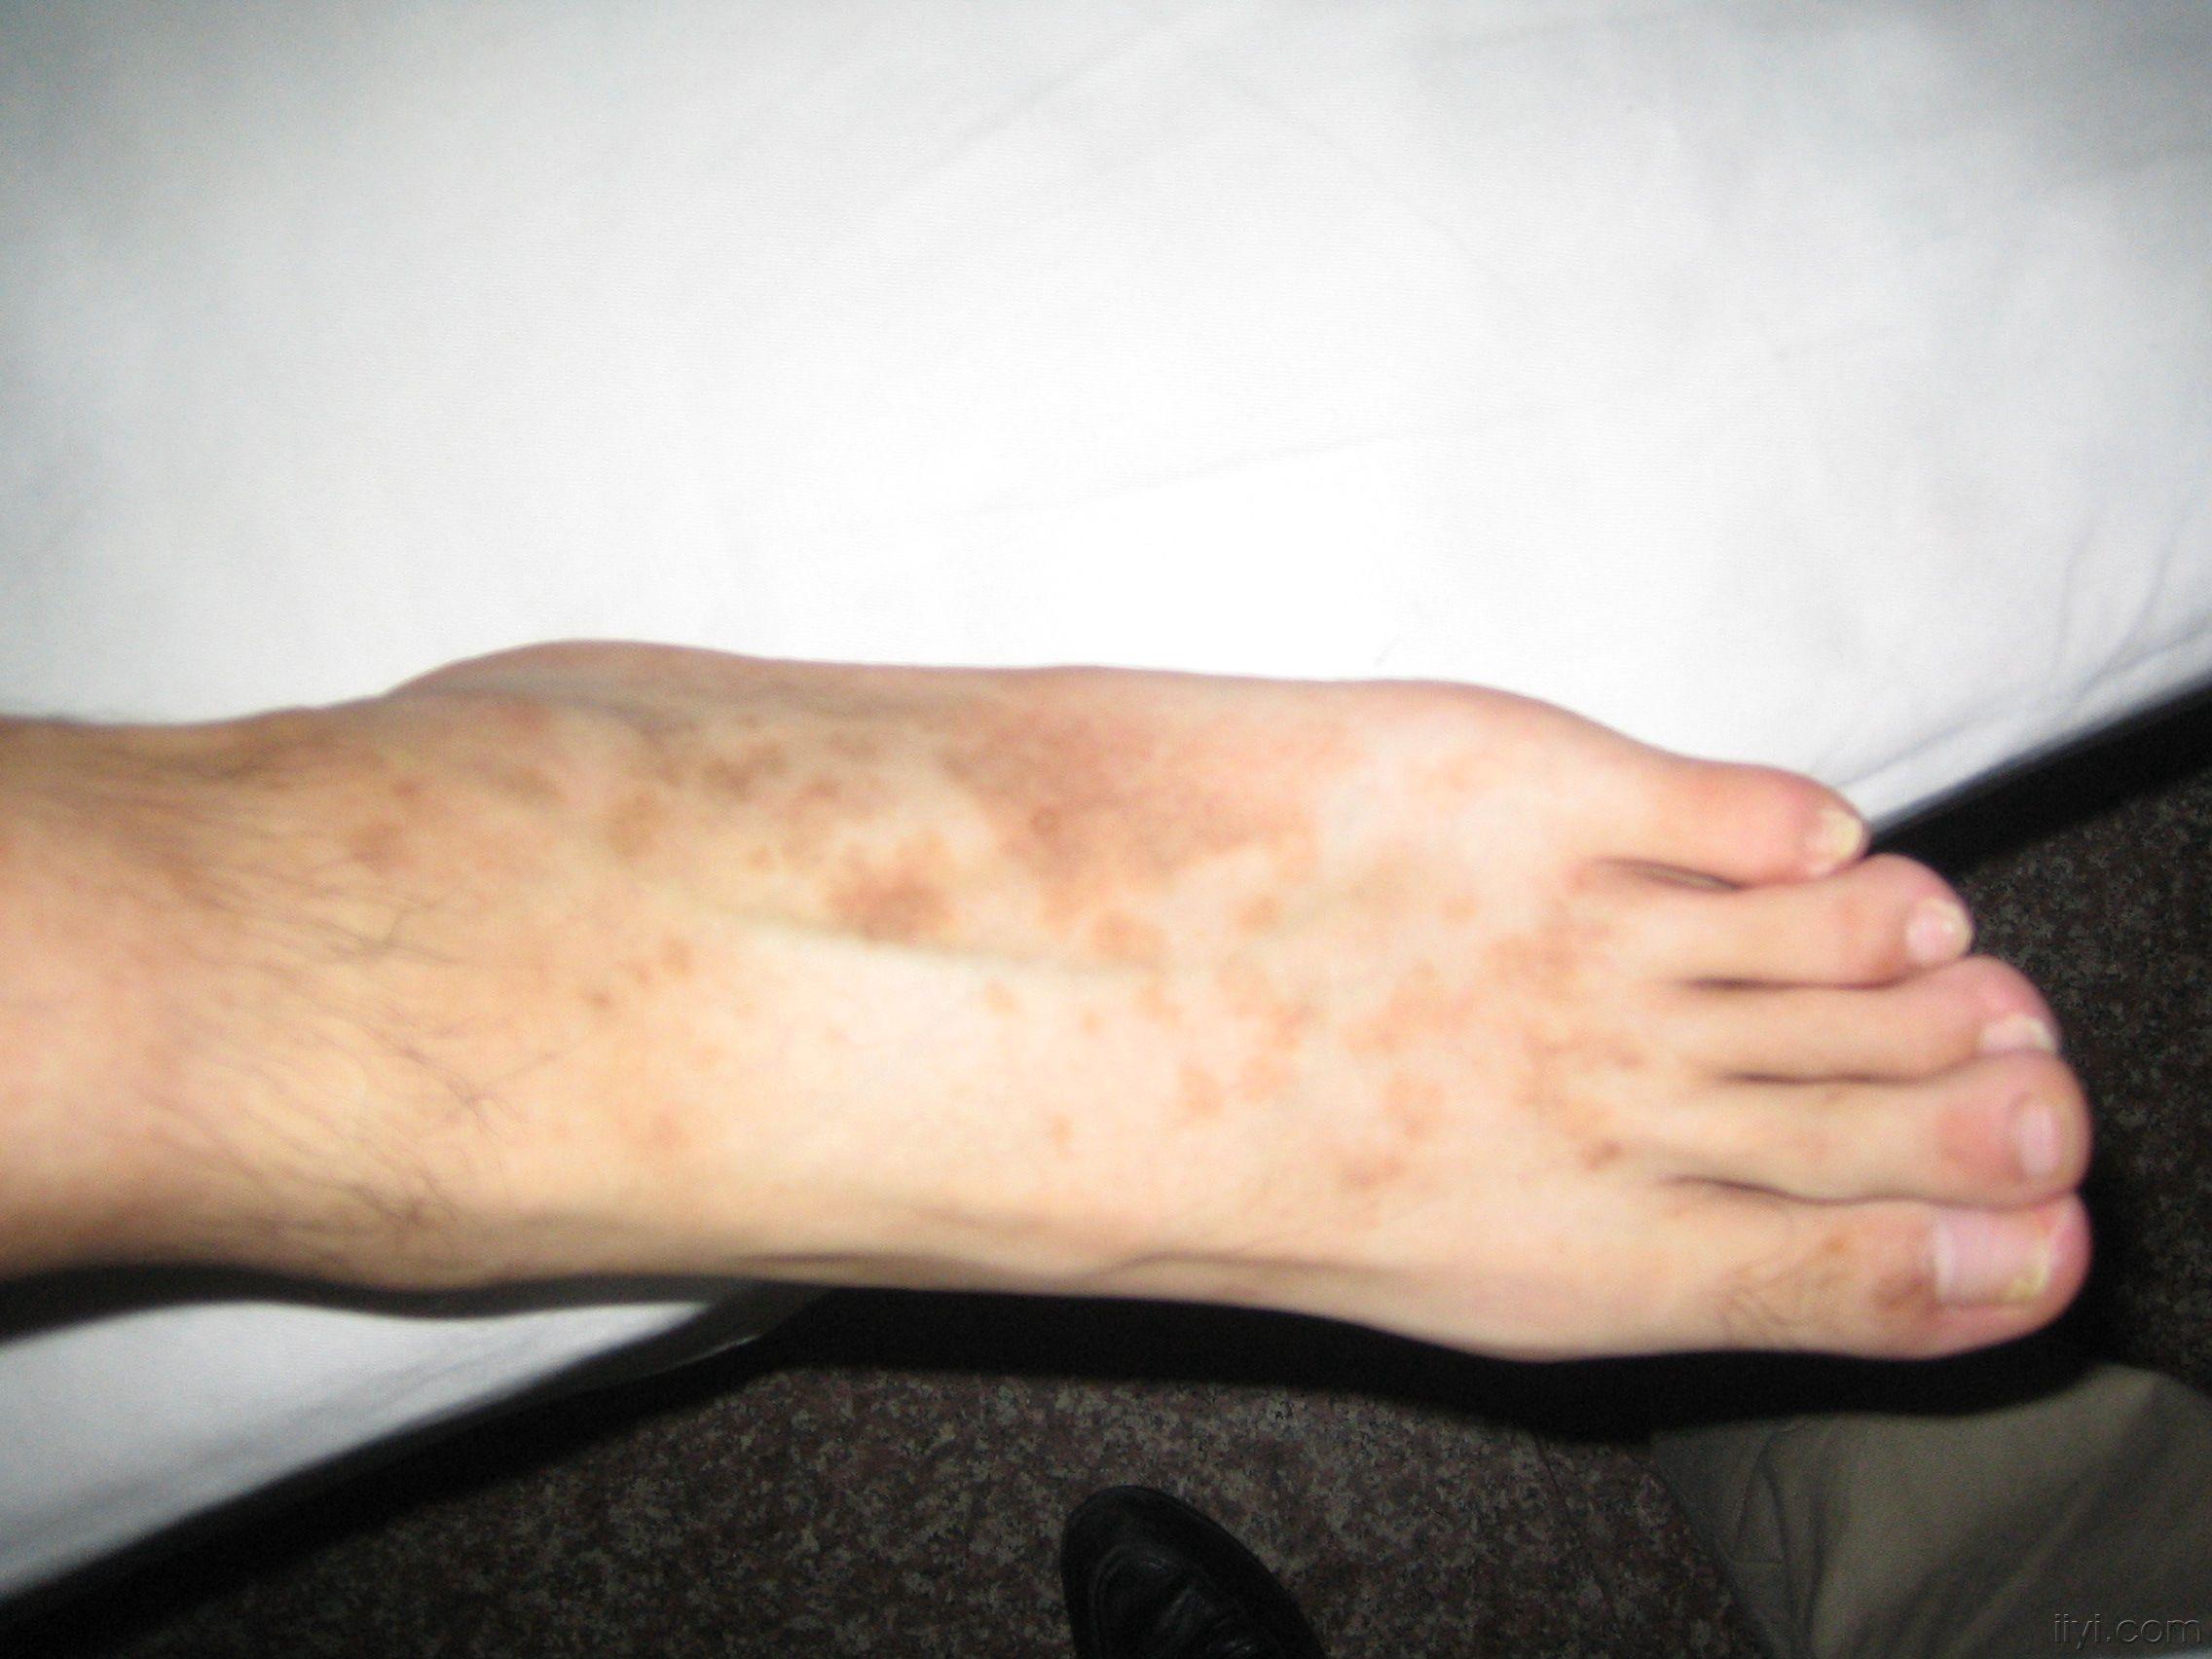 患者男,20岁,左脚背黑色素斑多年,请爱友们帮忙诊断治疗